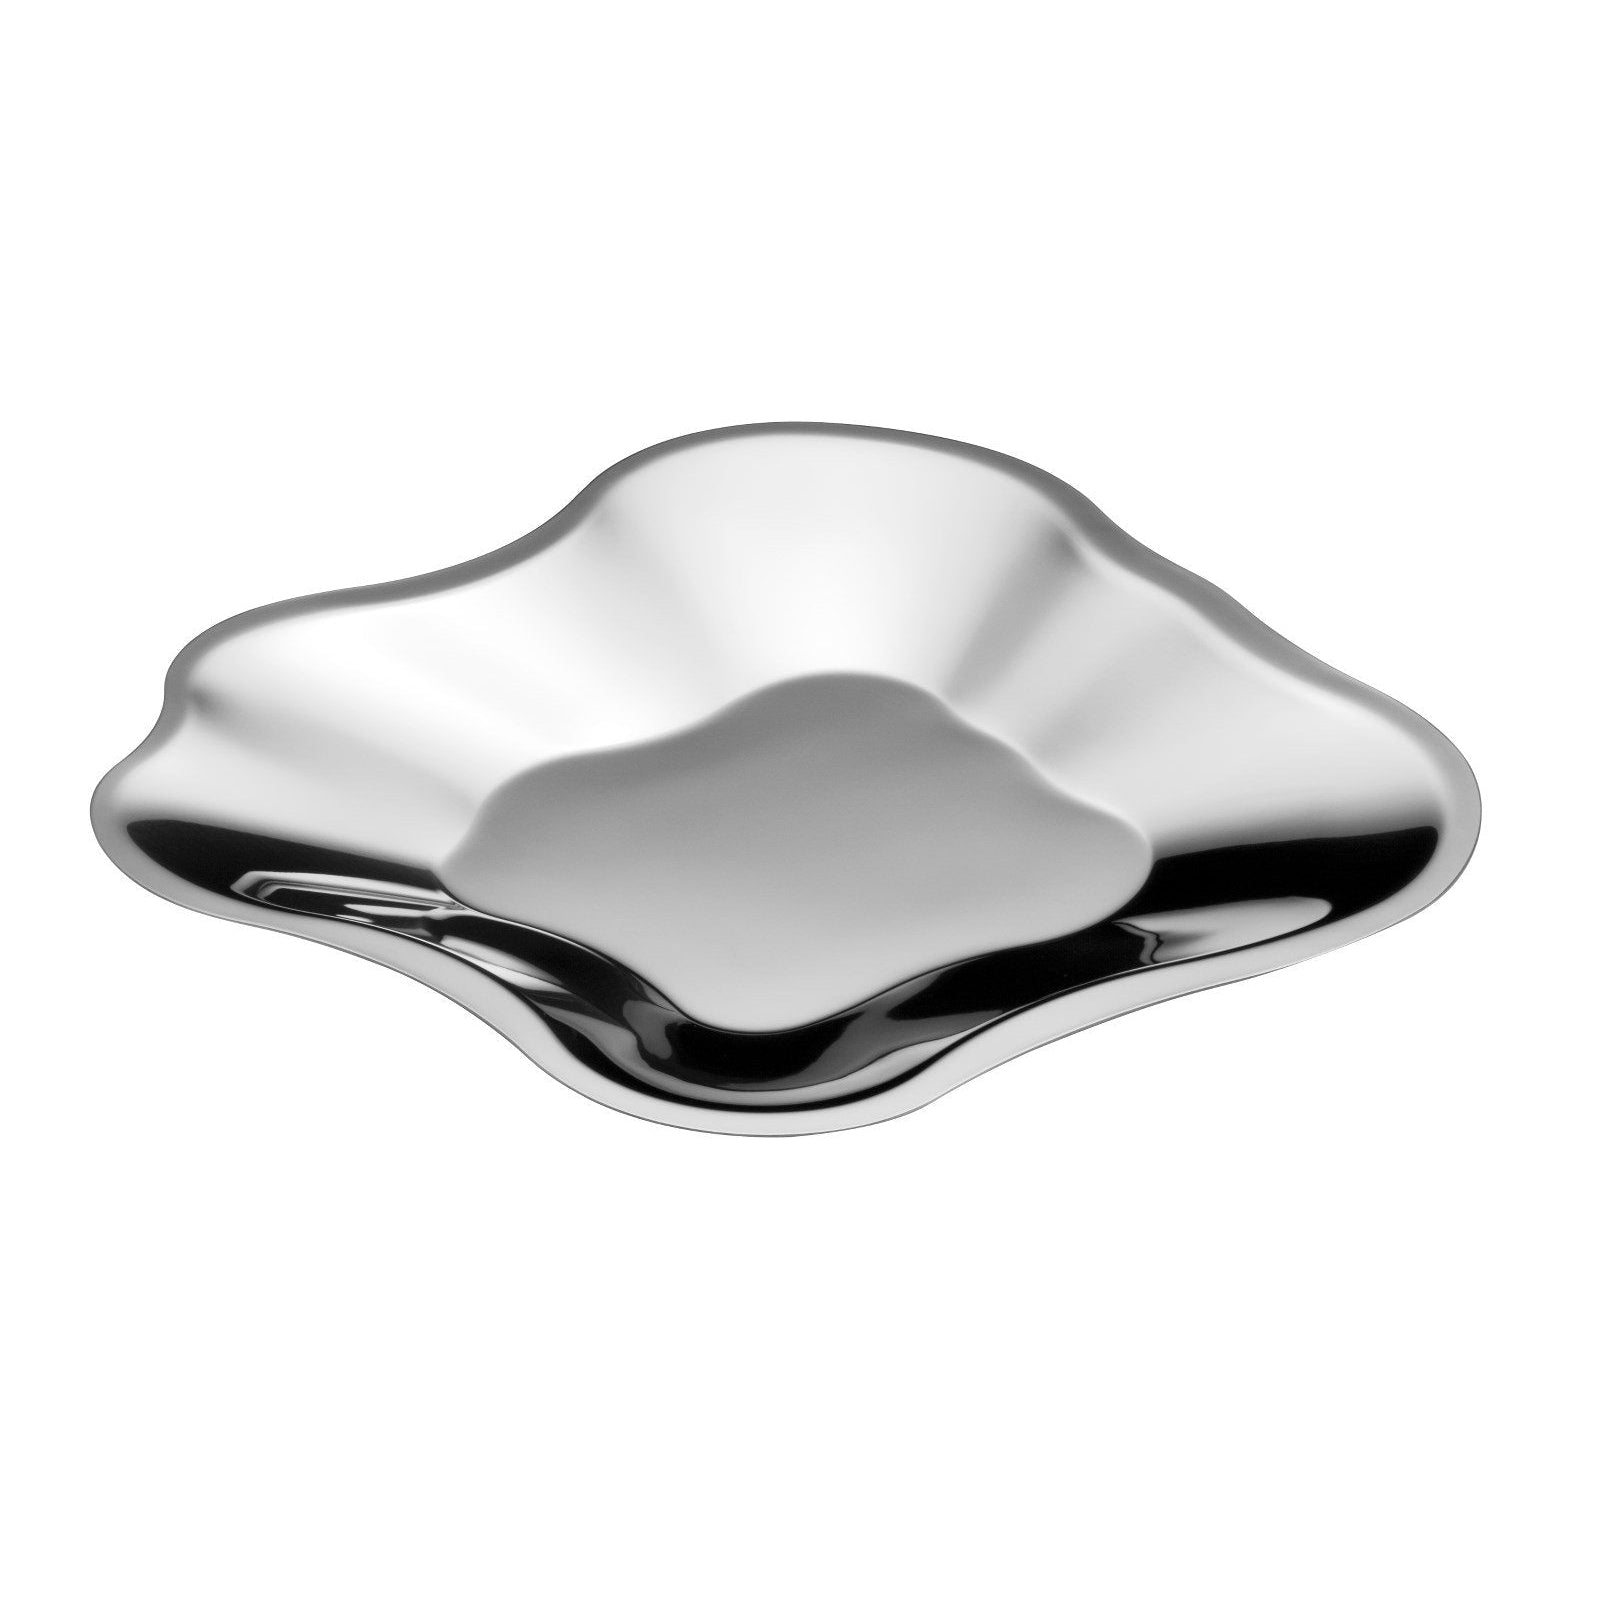 Iittala Alvar Aalto Bowl in acciaio inossidabile, 35,8 cm